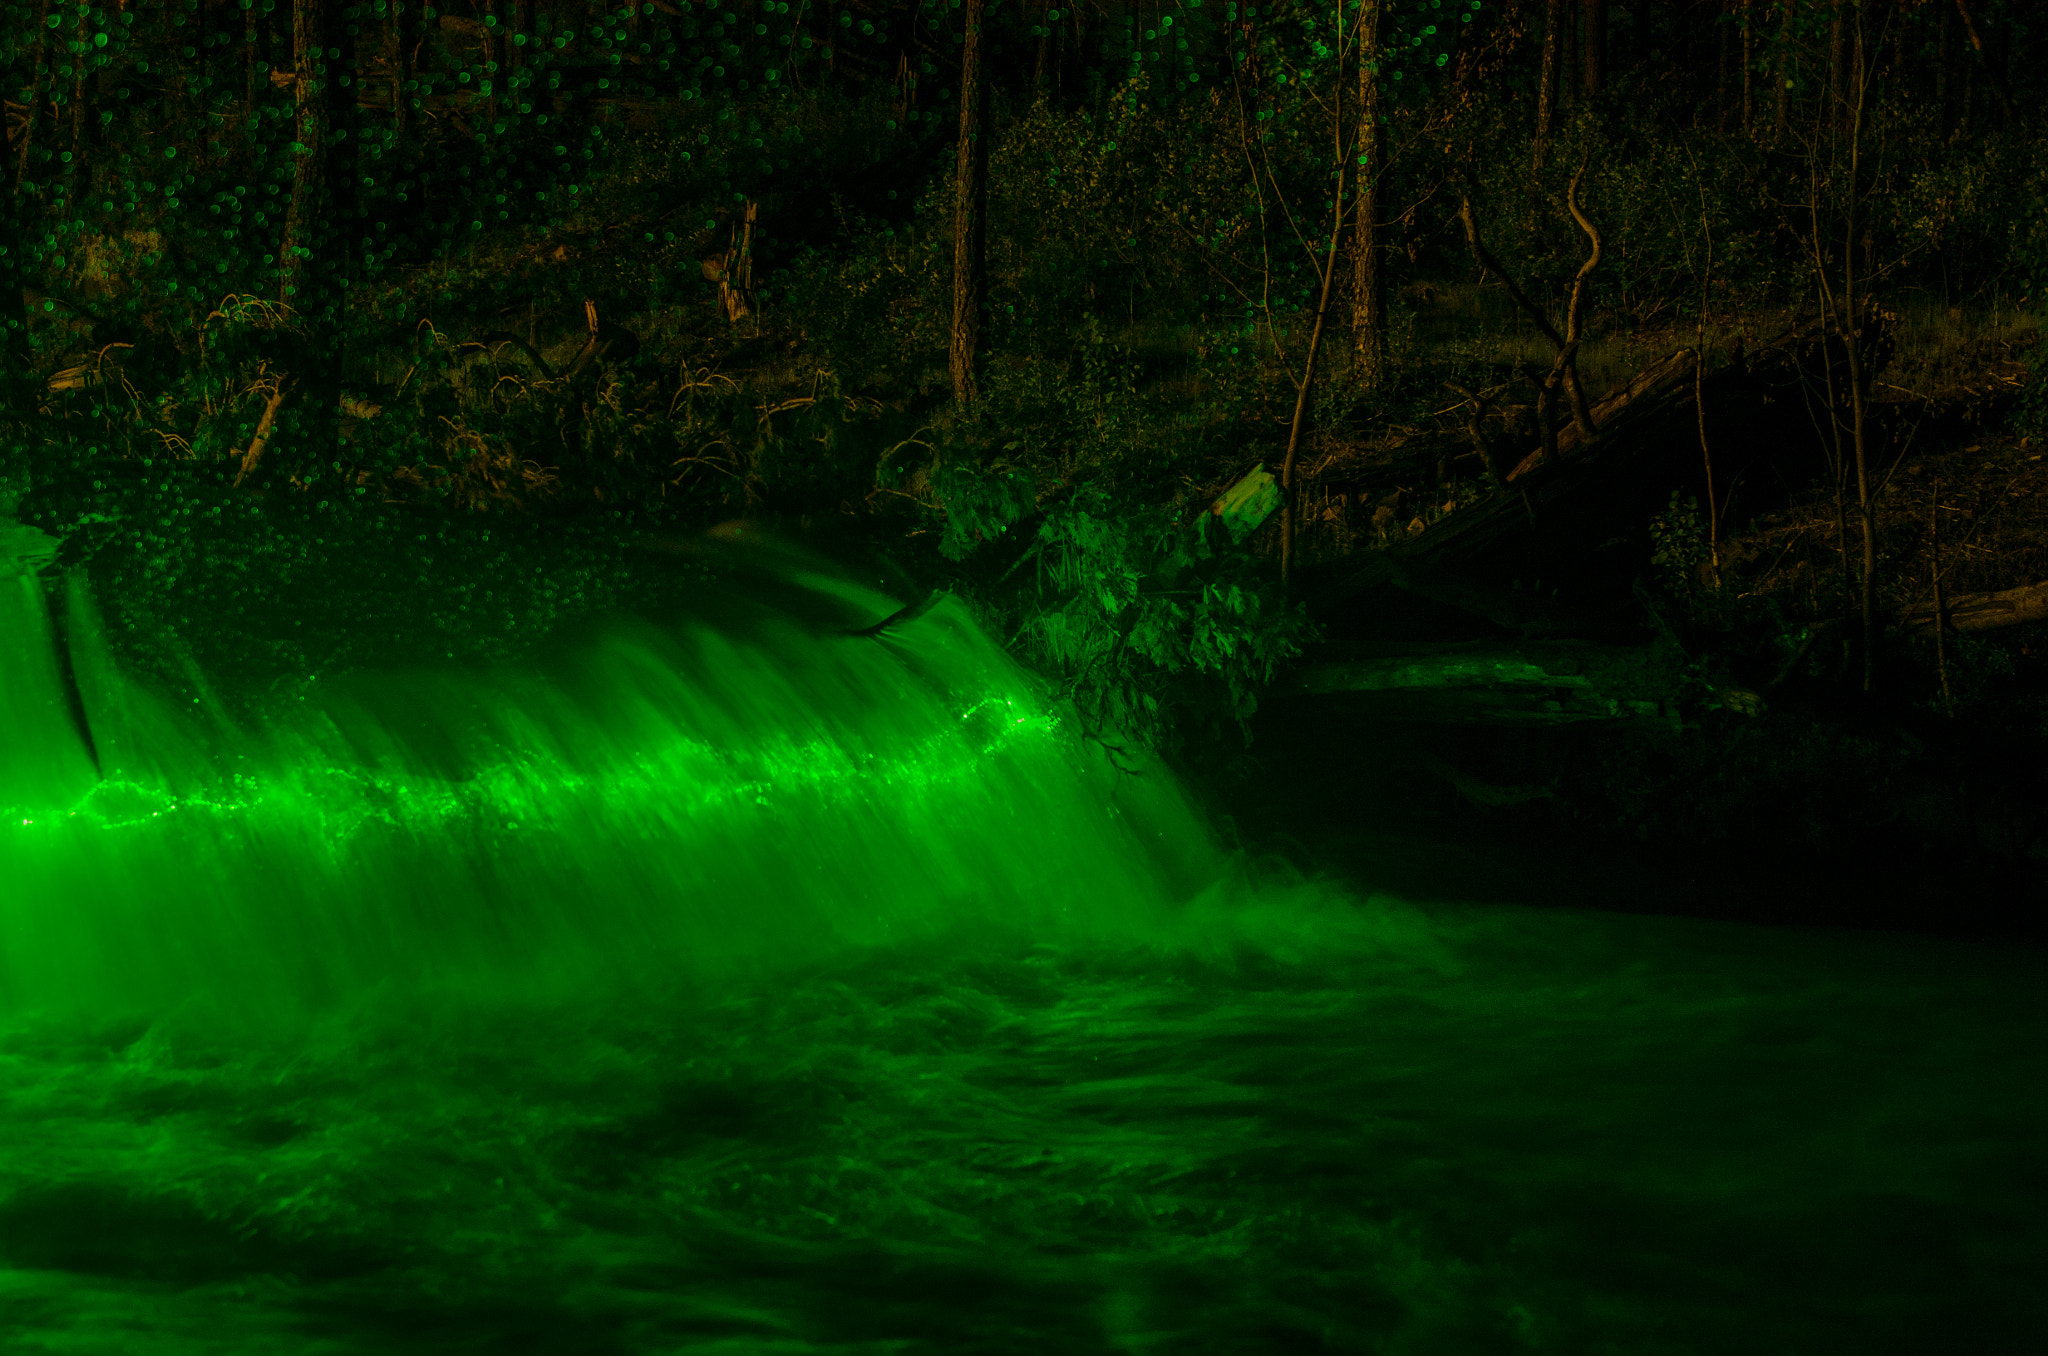 Nikon D5100 + Samyang 12mm F2.8 ED AS NCS Fisheye sample photo. Green water fall photography